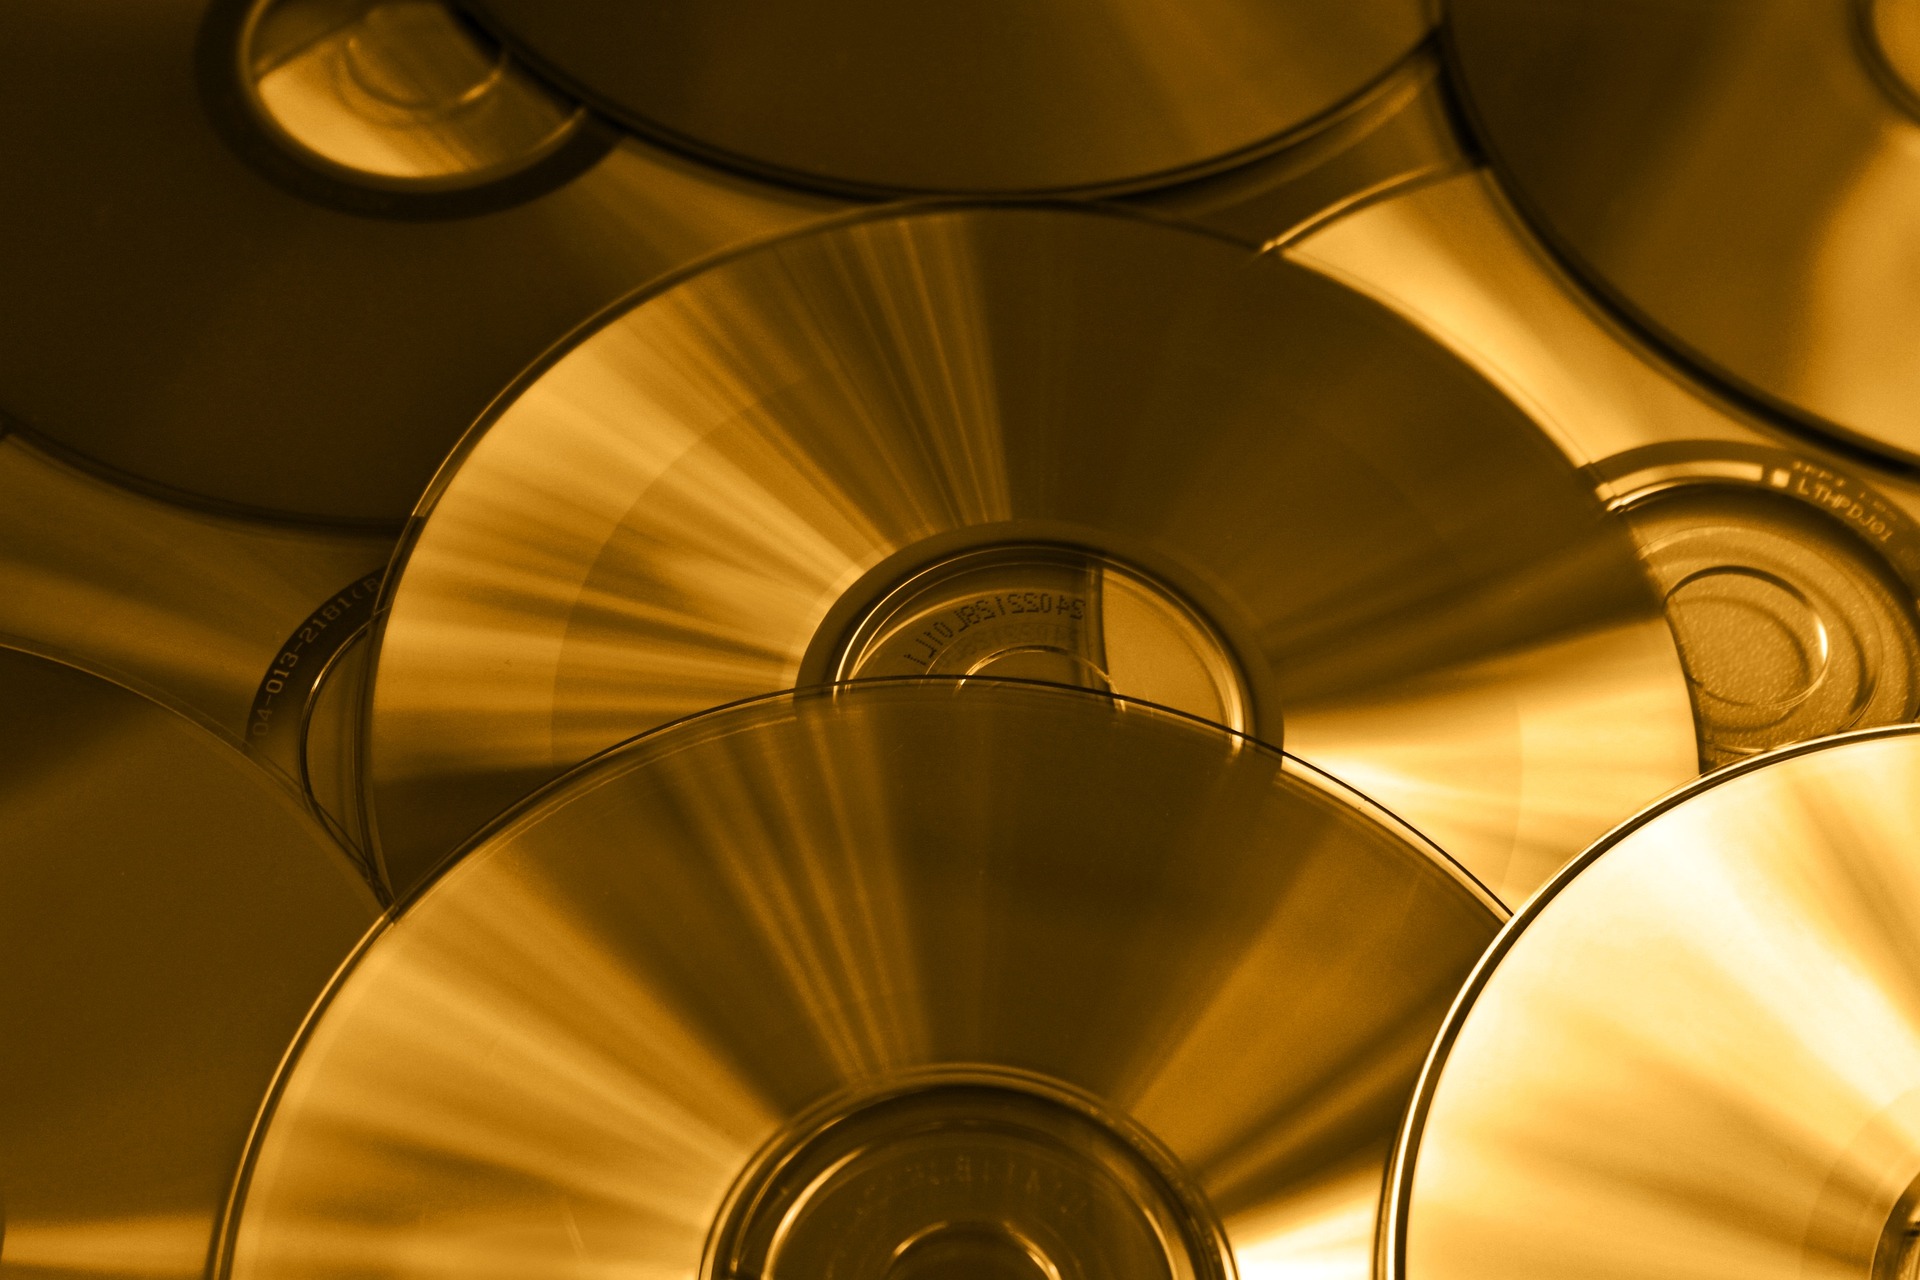 Das Foto zeigt viele golden-gelb-schwarz reflektierende CDs, die übereinander liegen